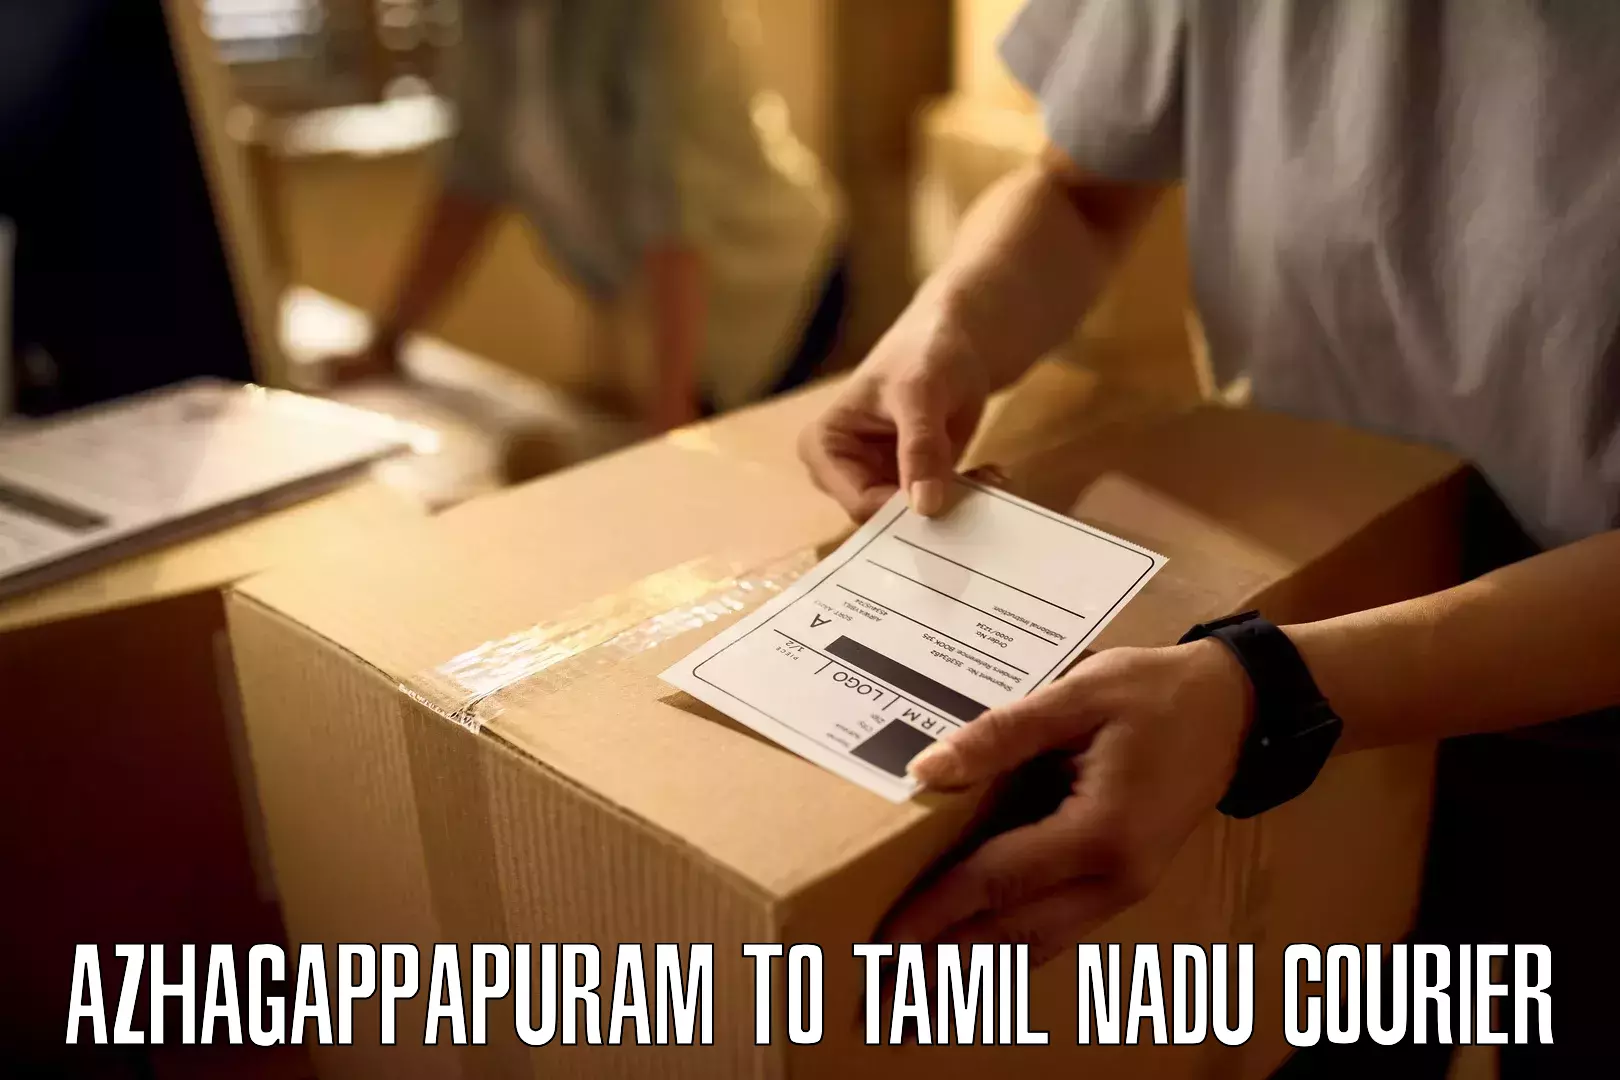 Courier service partnerships Azhagappapuram to IIIT Tiruchirappalli